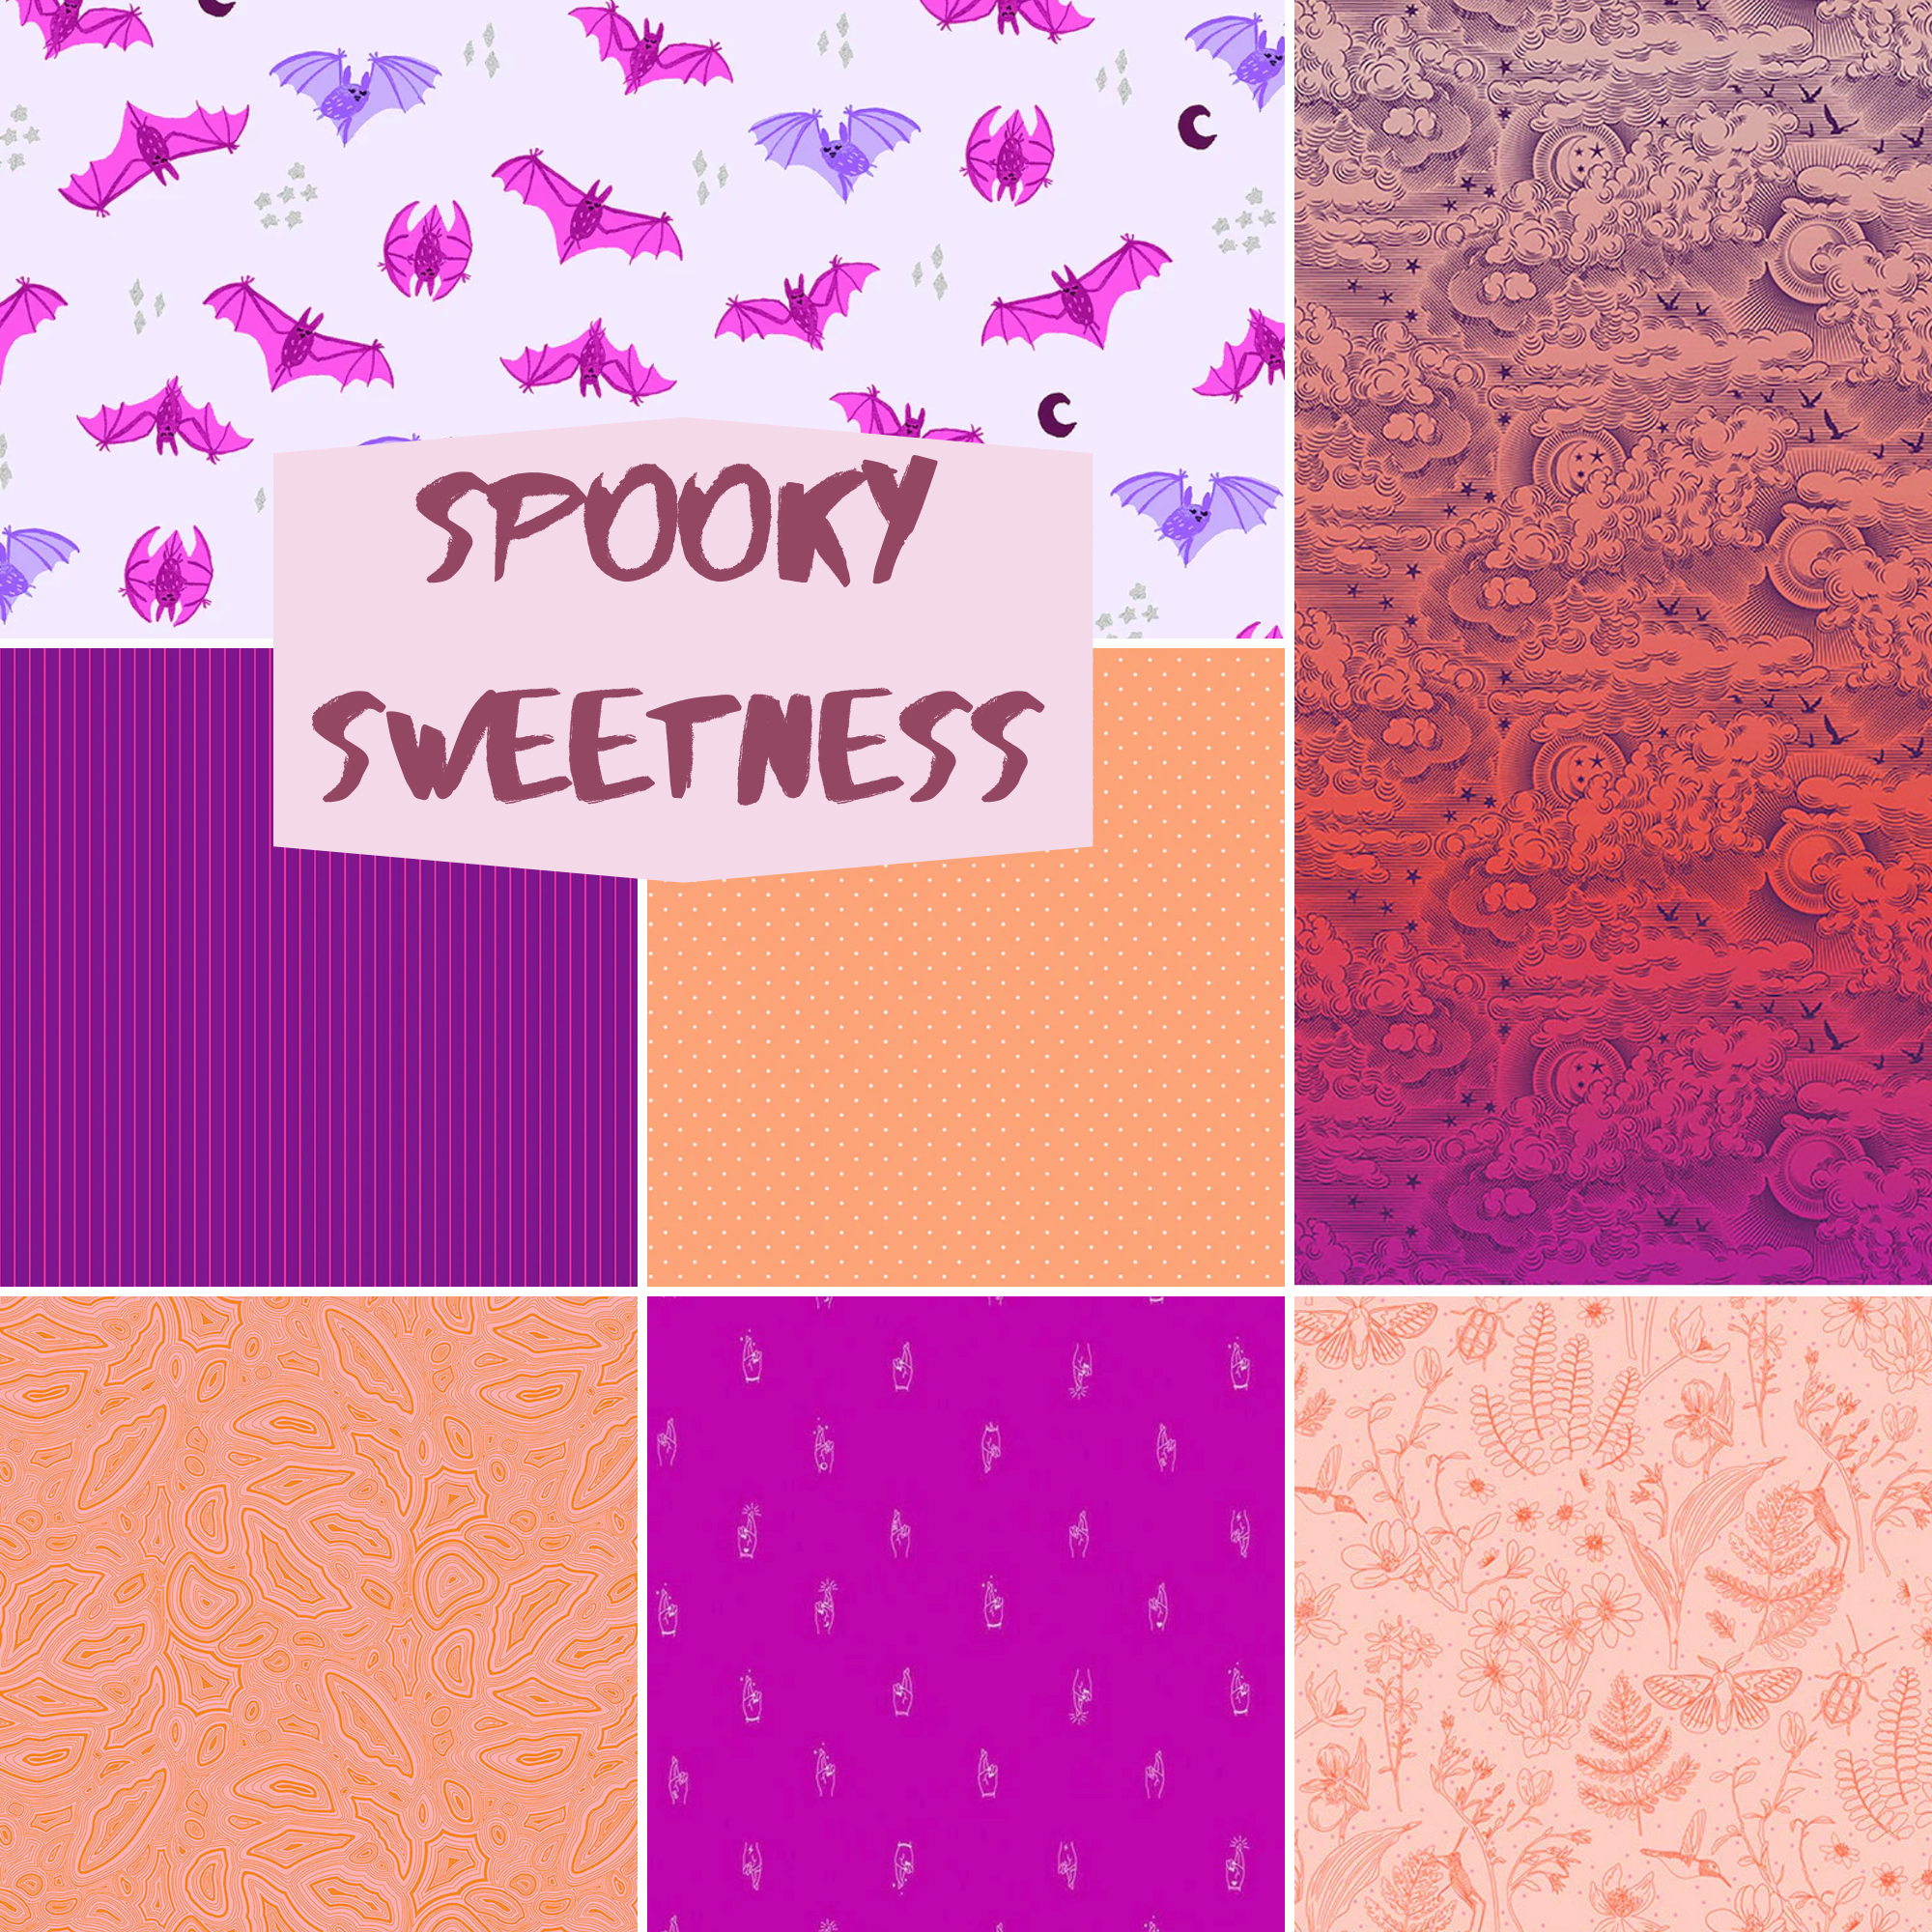 Spooky Sweetness FQ Bundle